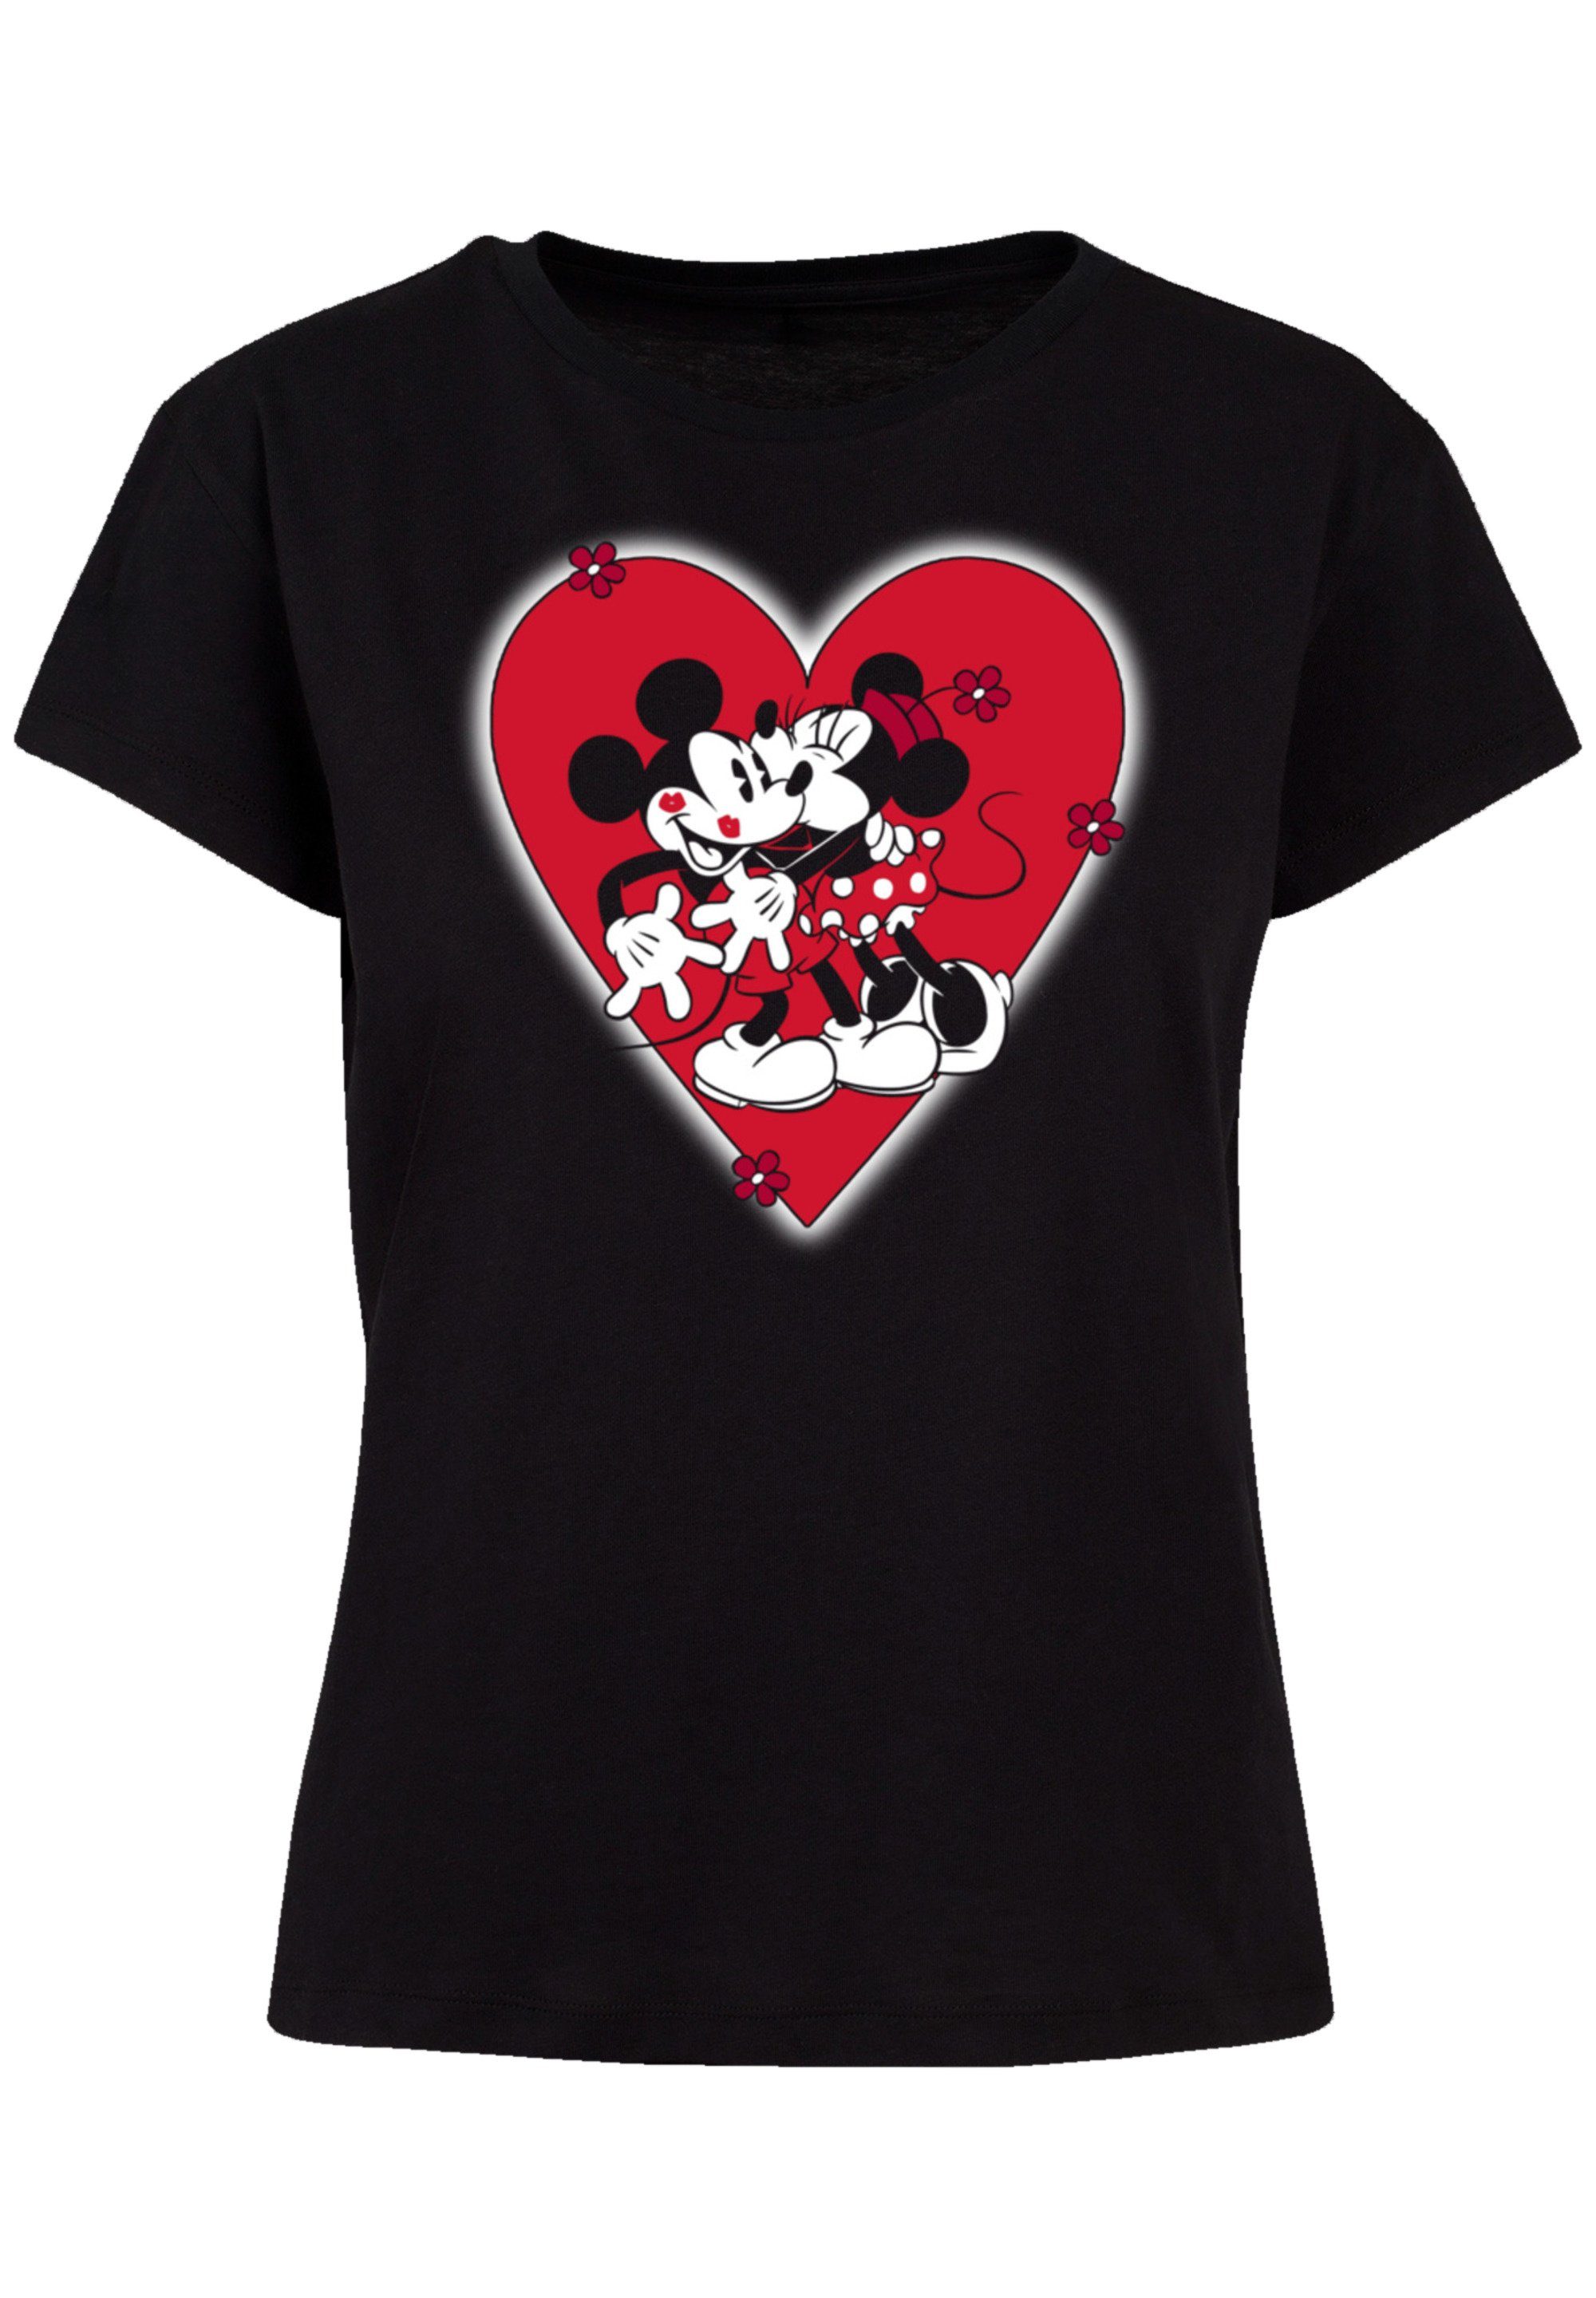 hochwertige Micky Premium und Maus Disney Together Perfekte Passform F4NT4STIC Verarbeitung Qualität, T-Shirt